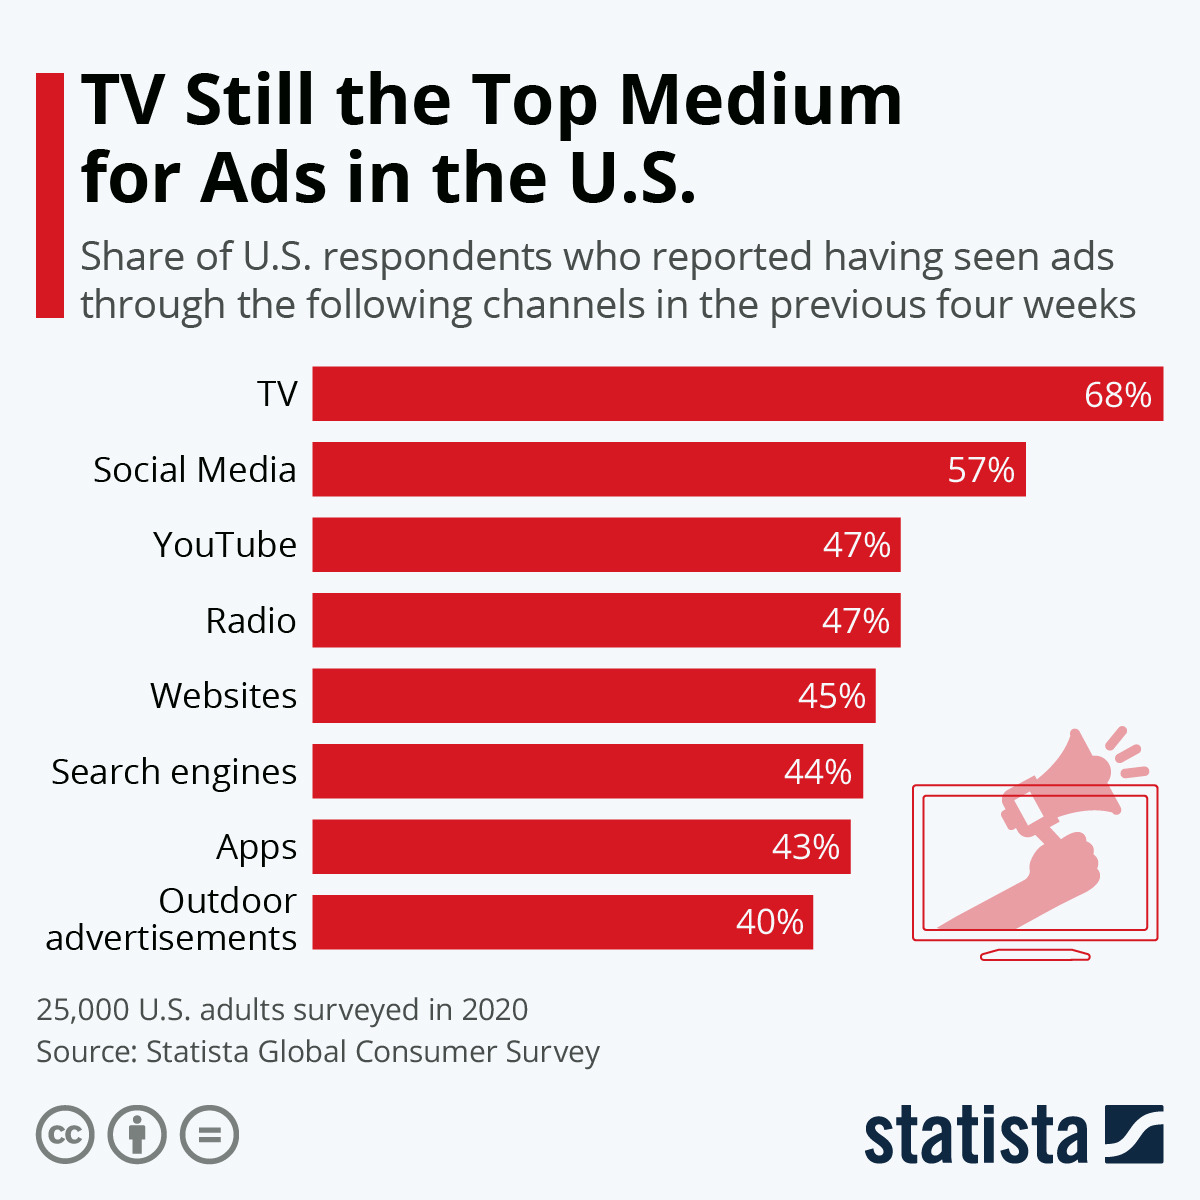 Estudio de Statista indicando que los anuncios en televisión todavía consiguen el mayor alcance de todos los tipos de publicidad